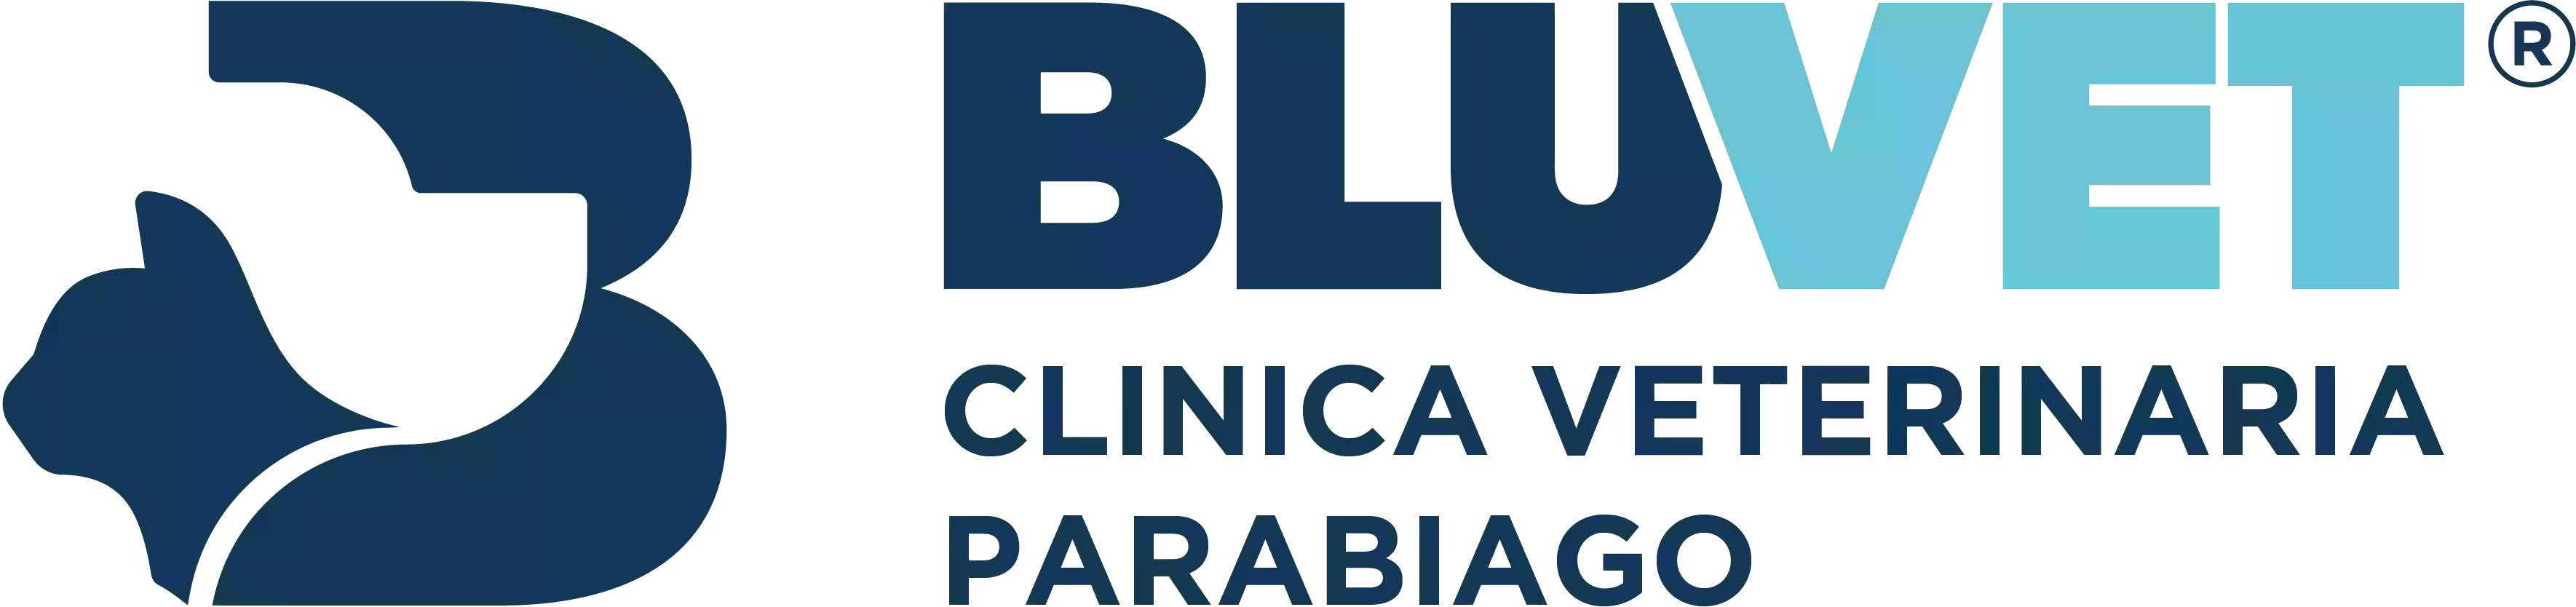 Clinica Veterinaria Parabiago